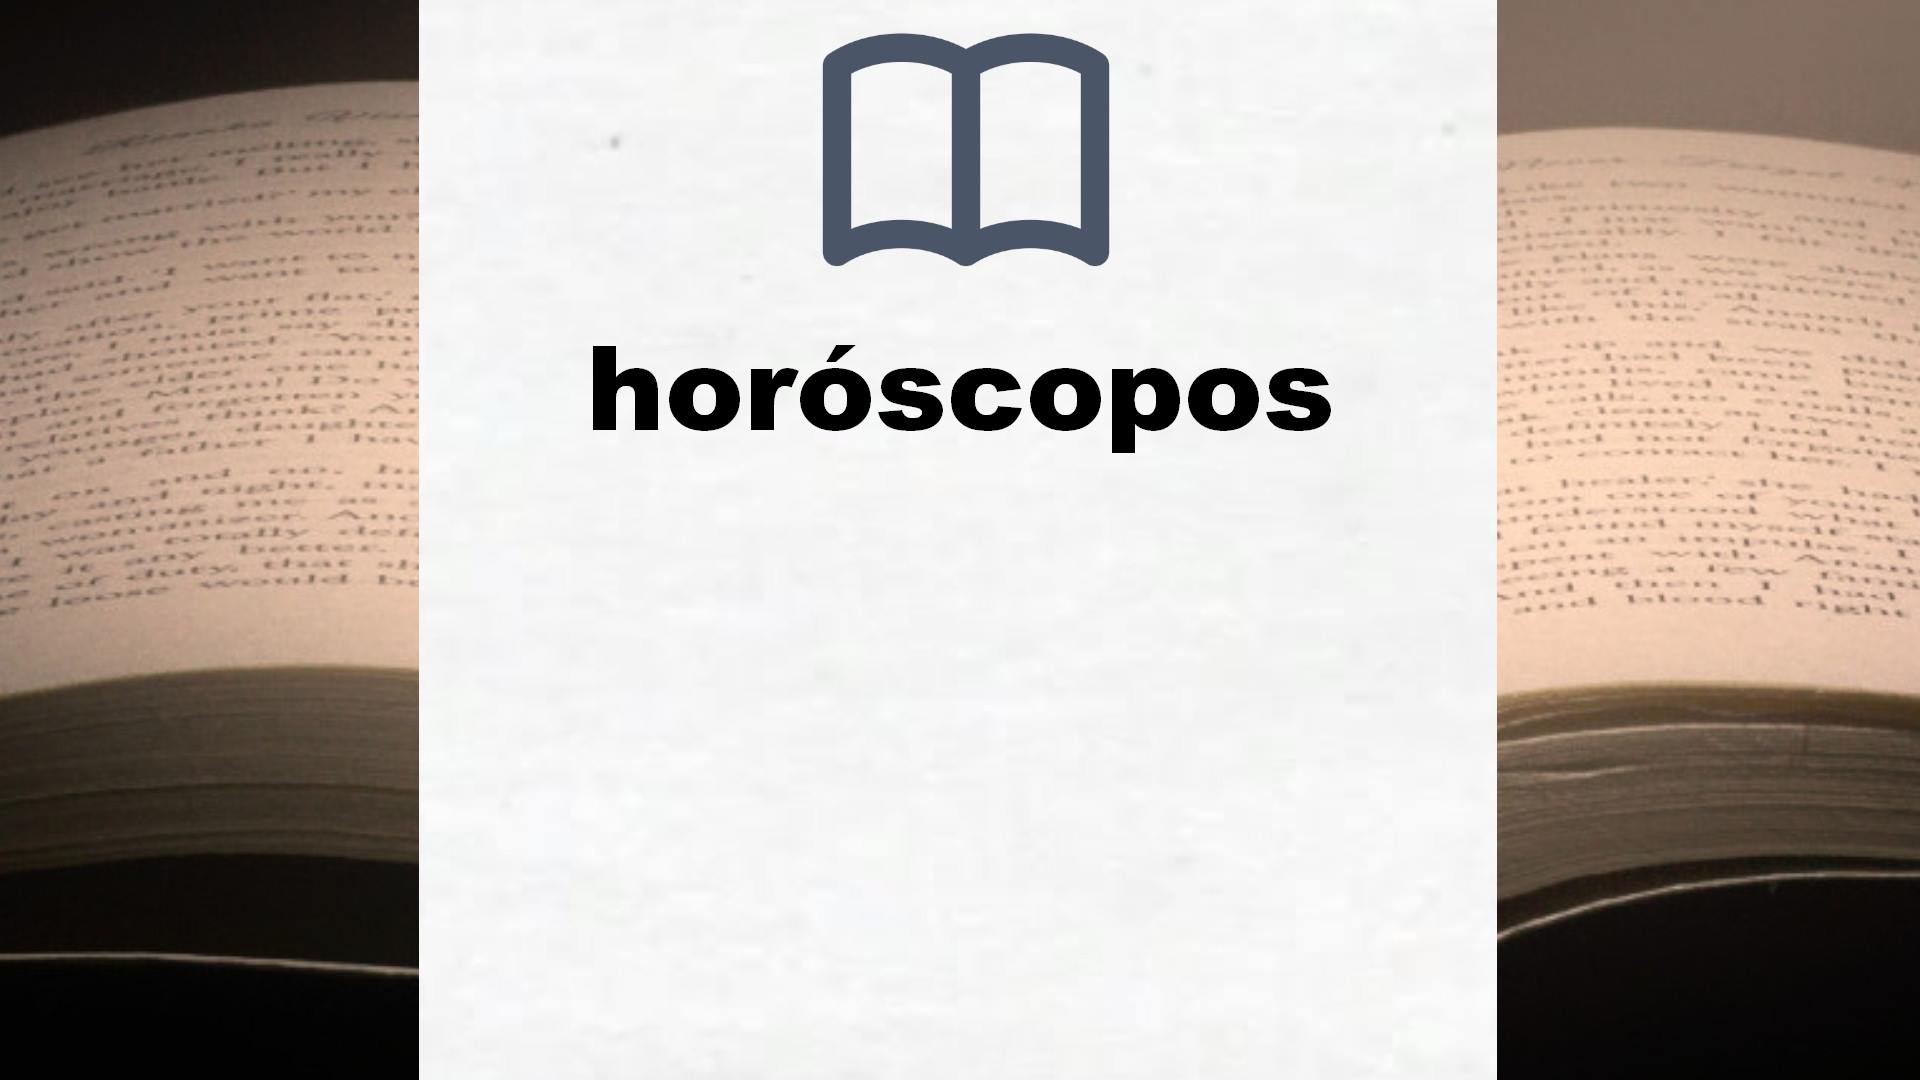 Libros sobre horóscopos